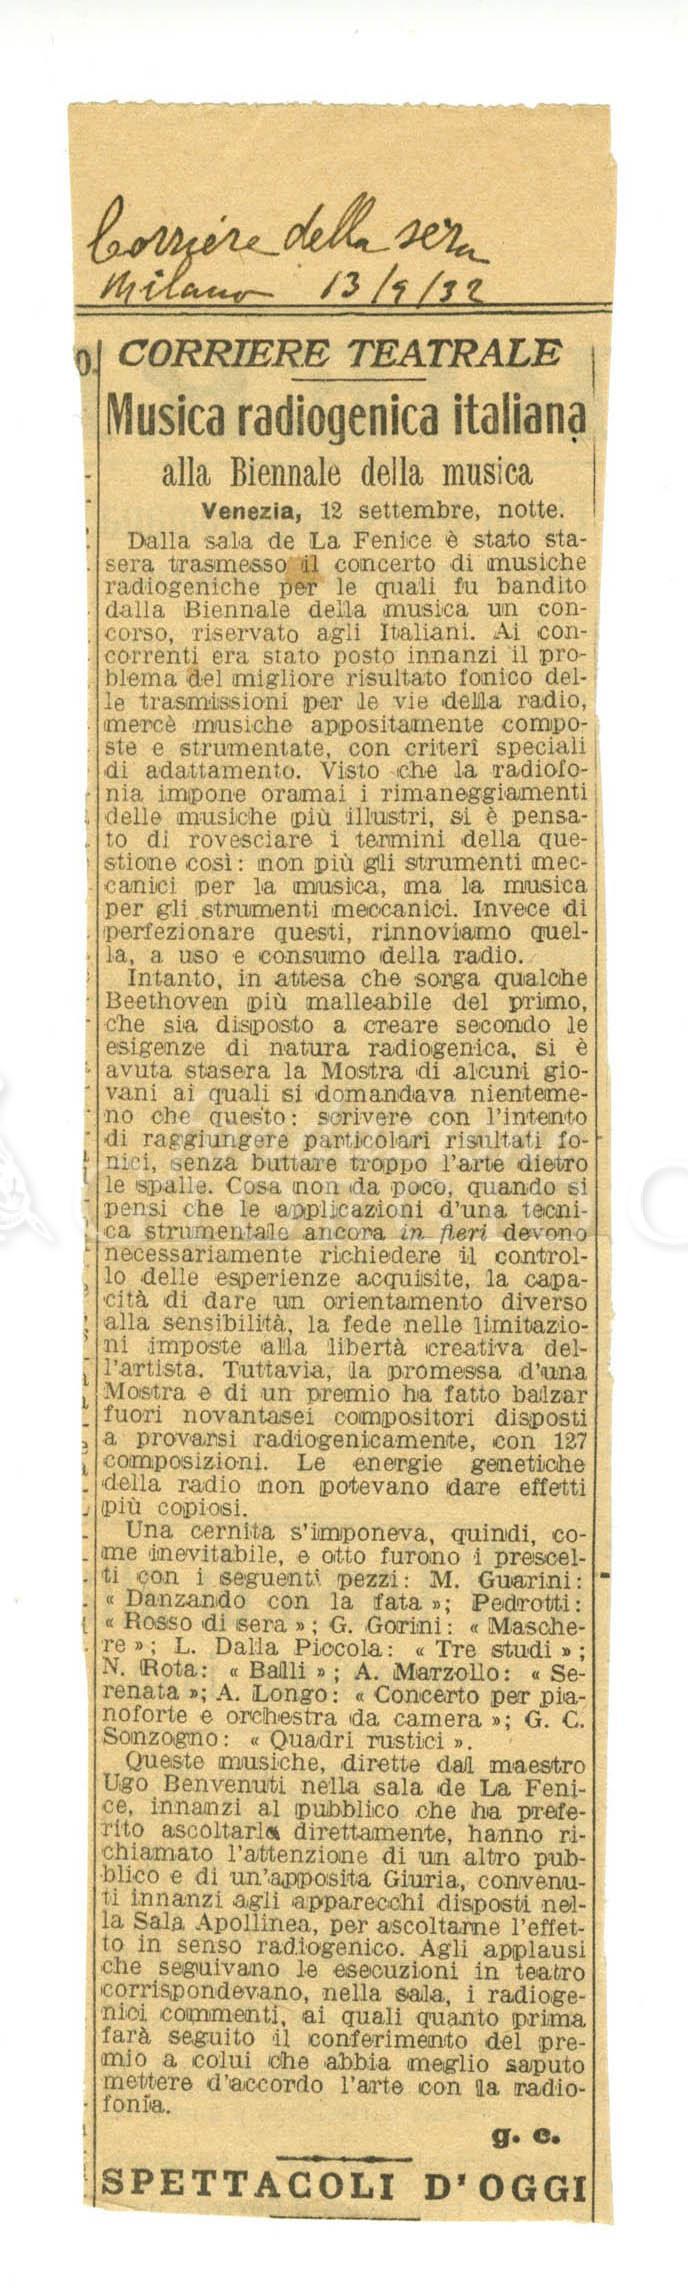 Musica radiogenica italiana alla Biennale della musica
				 [13 settembre 1932]